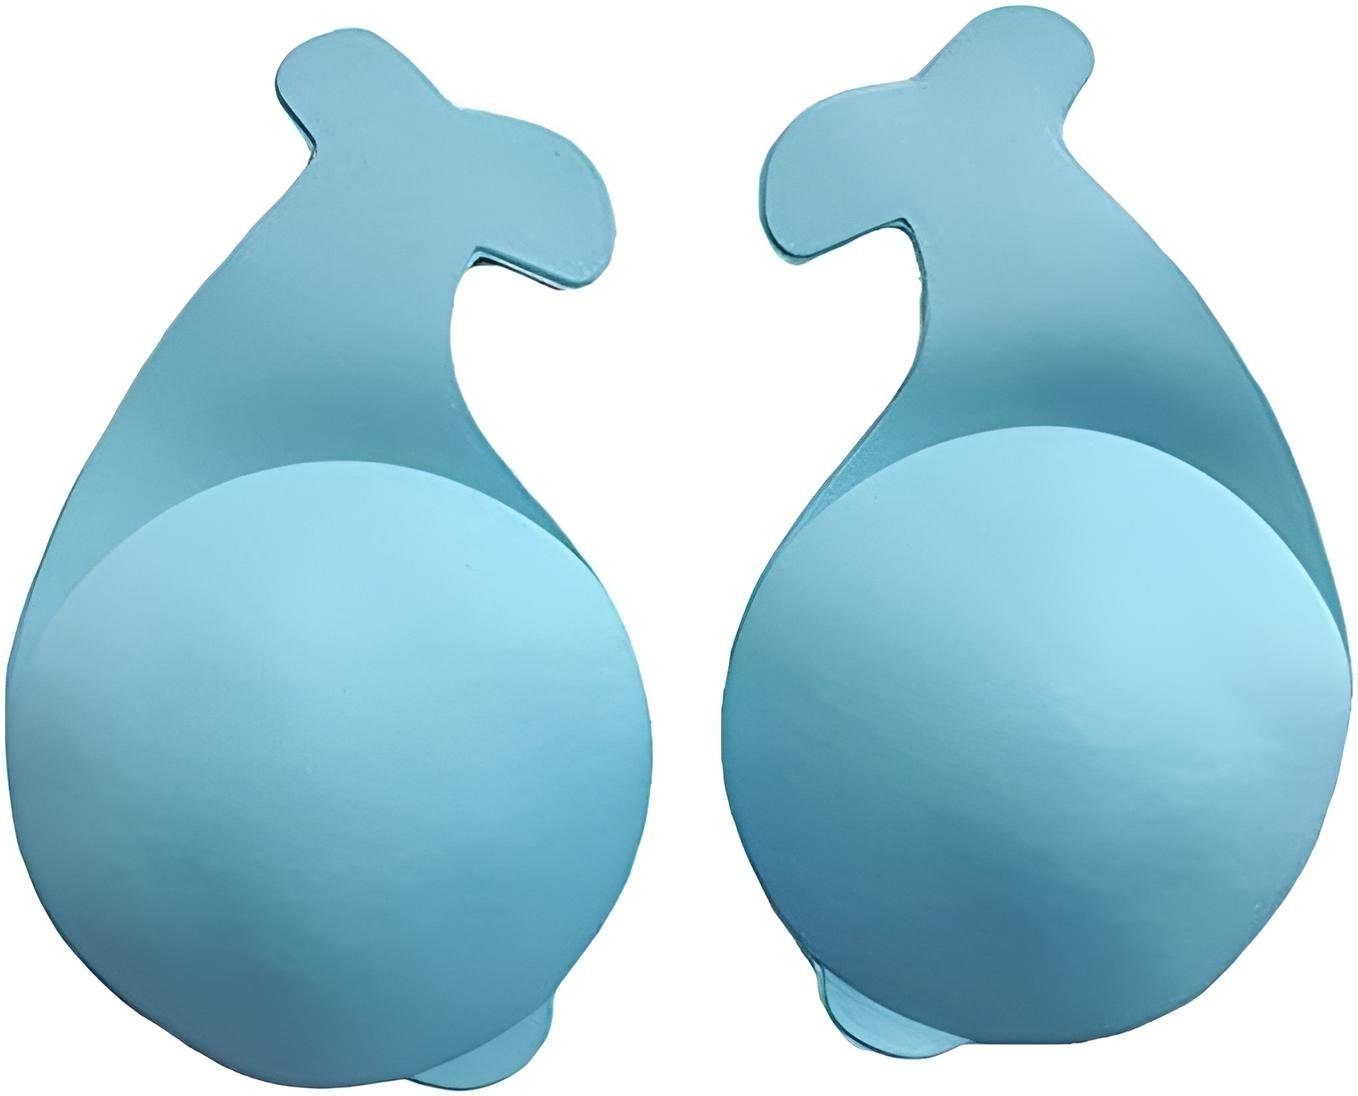 Diyarts Push-up-BH (Silikon-BH-Pads, 2 Stück) Unsichtbare Bruststütze für Komfort, Wasserdicht, perfekte Brustform